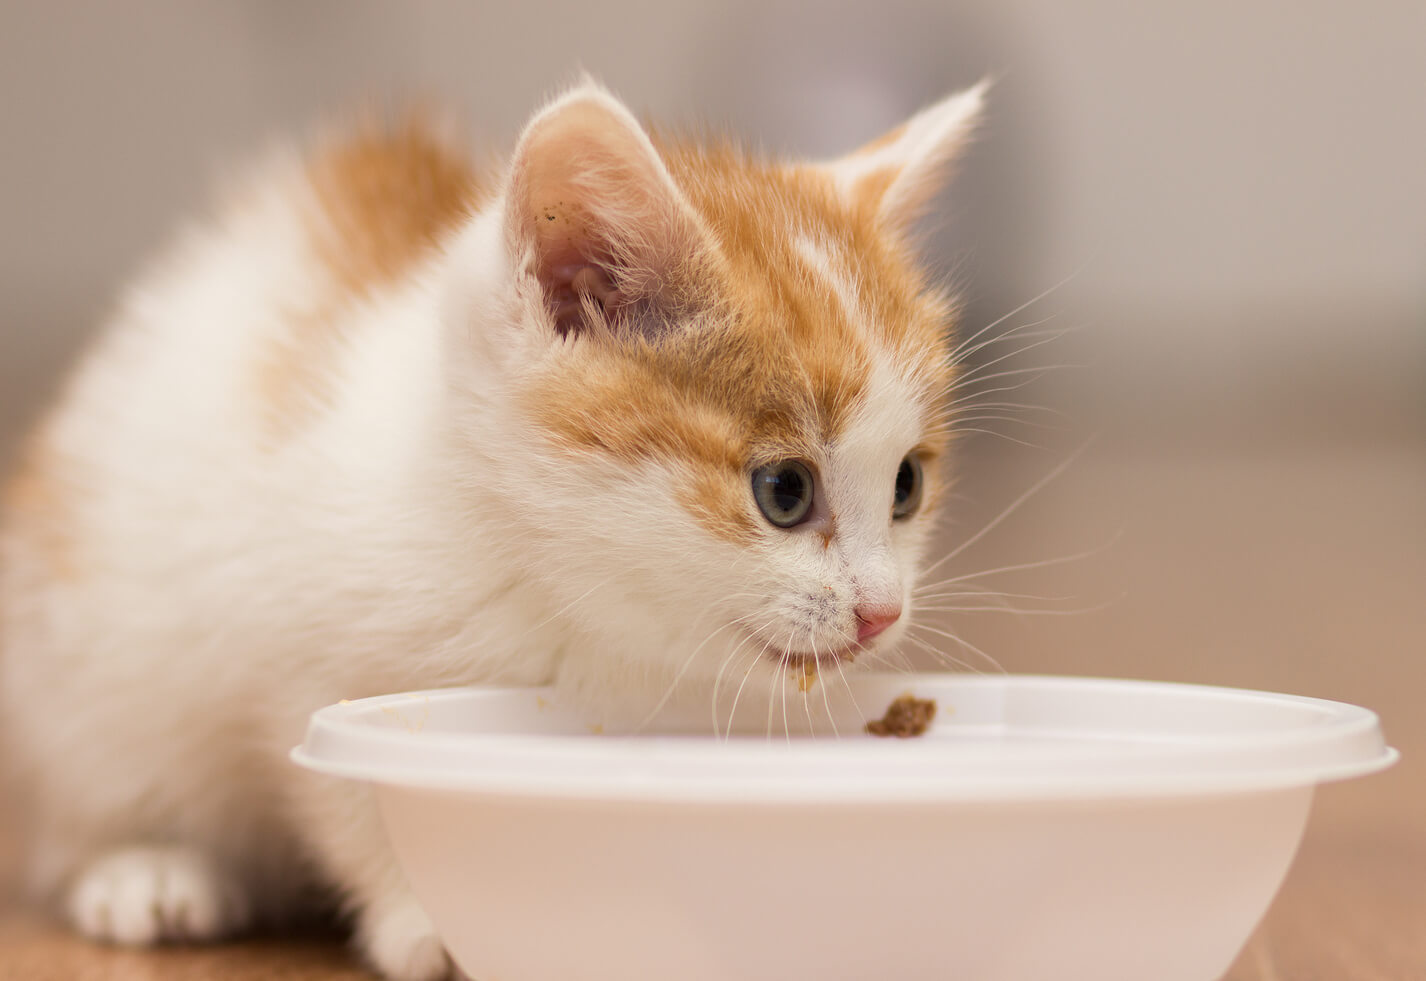 Makanan Sesuai Untuk Anak Kucing | Alumni Association